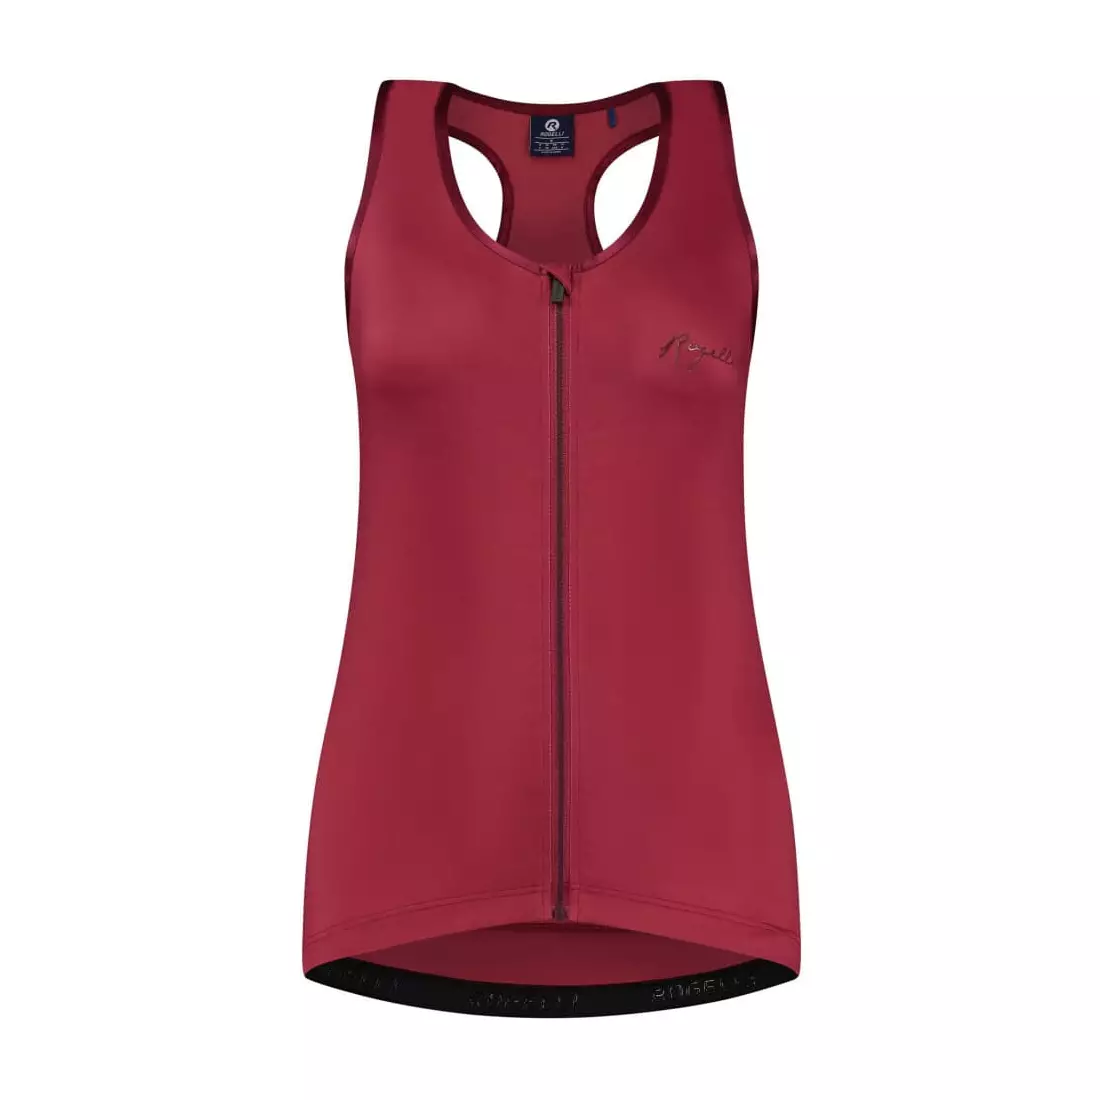 Rogelli ABBEY II women's cycling vest, cherry